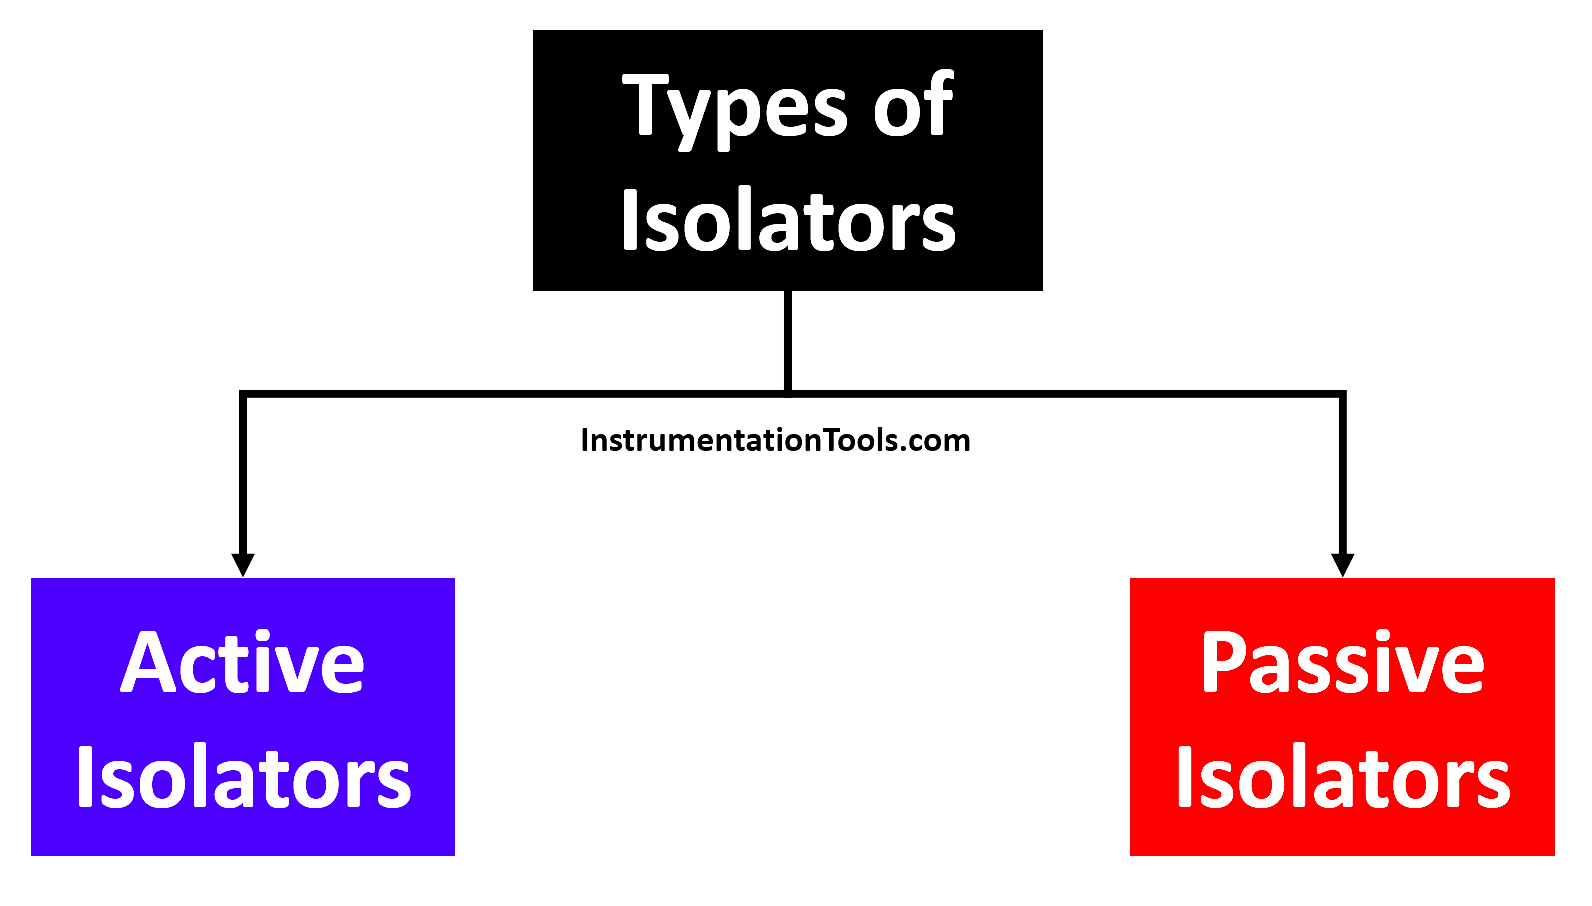 Types of Isolators